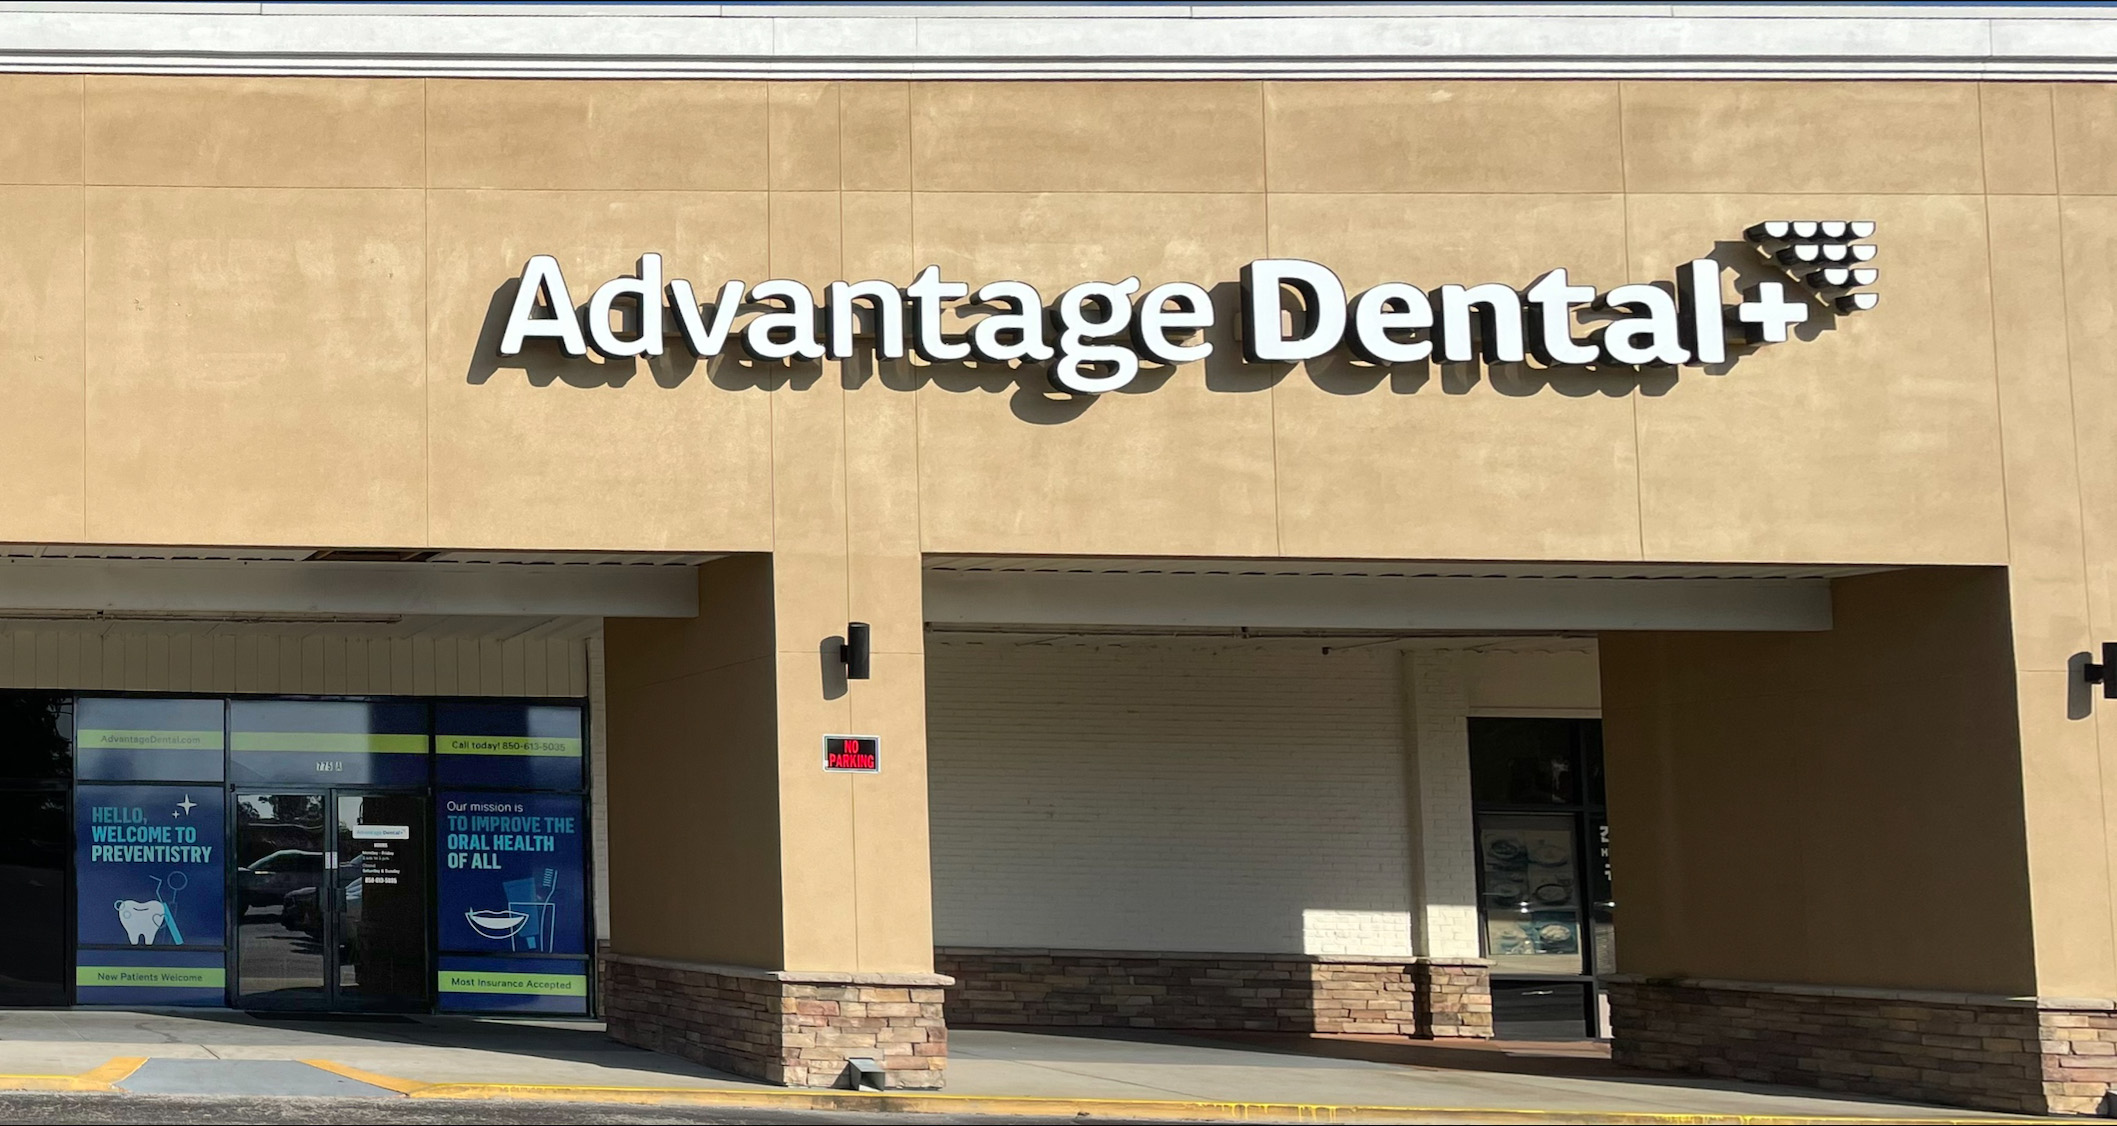 Advantage Dental+ Crestview storefront.